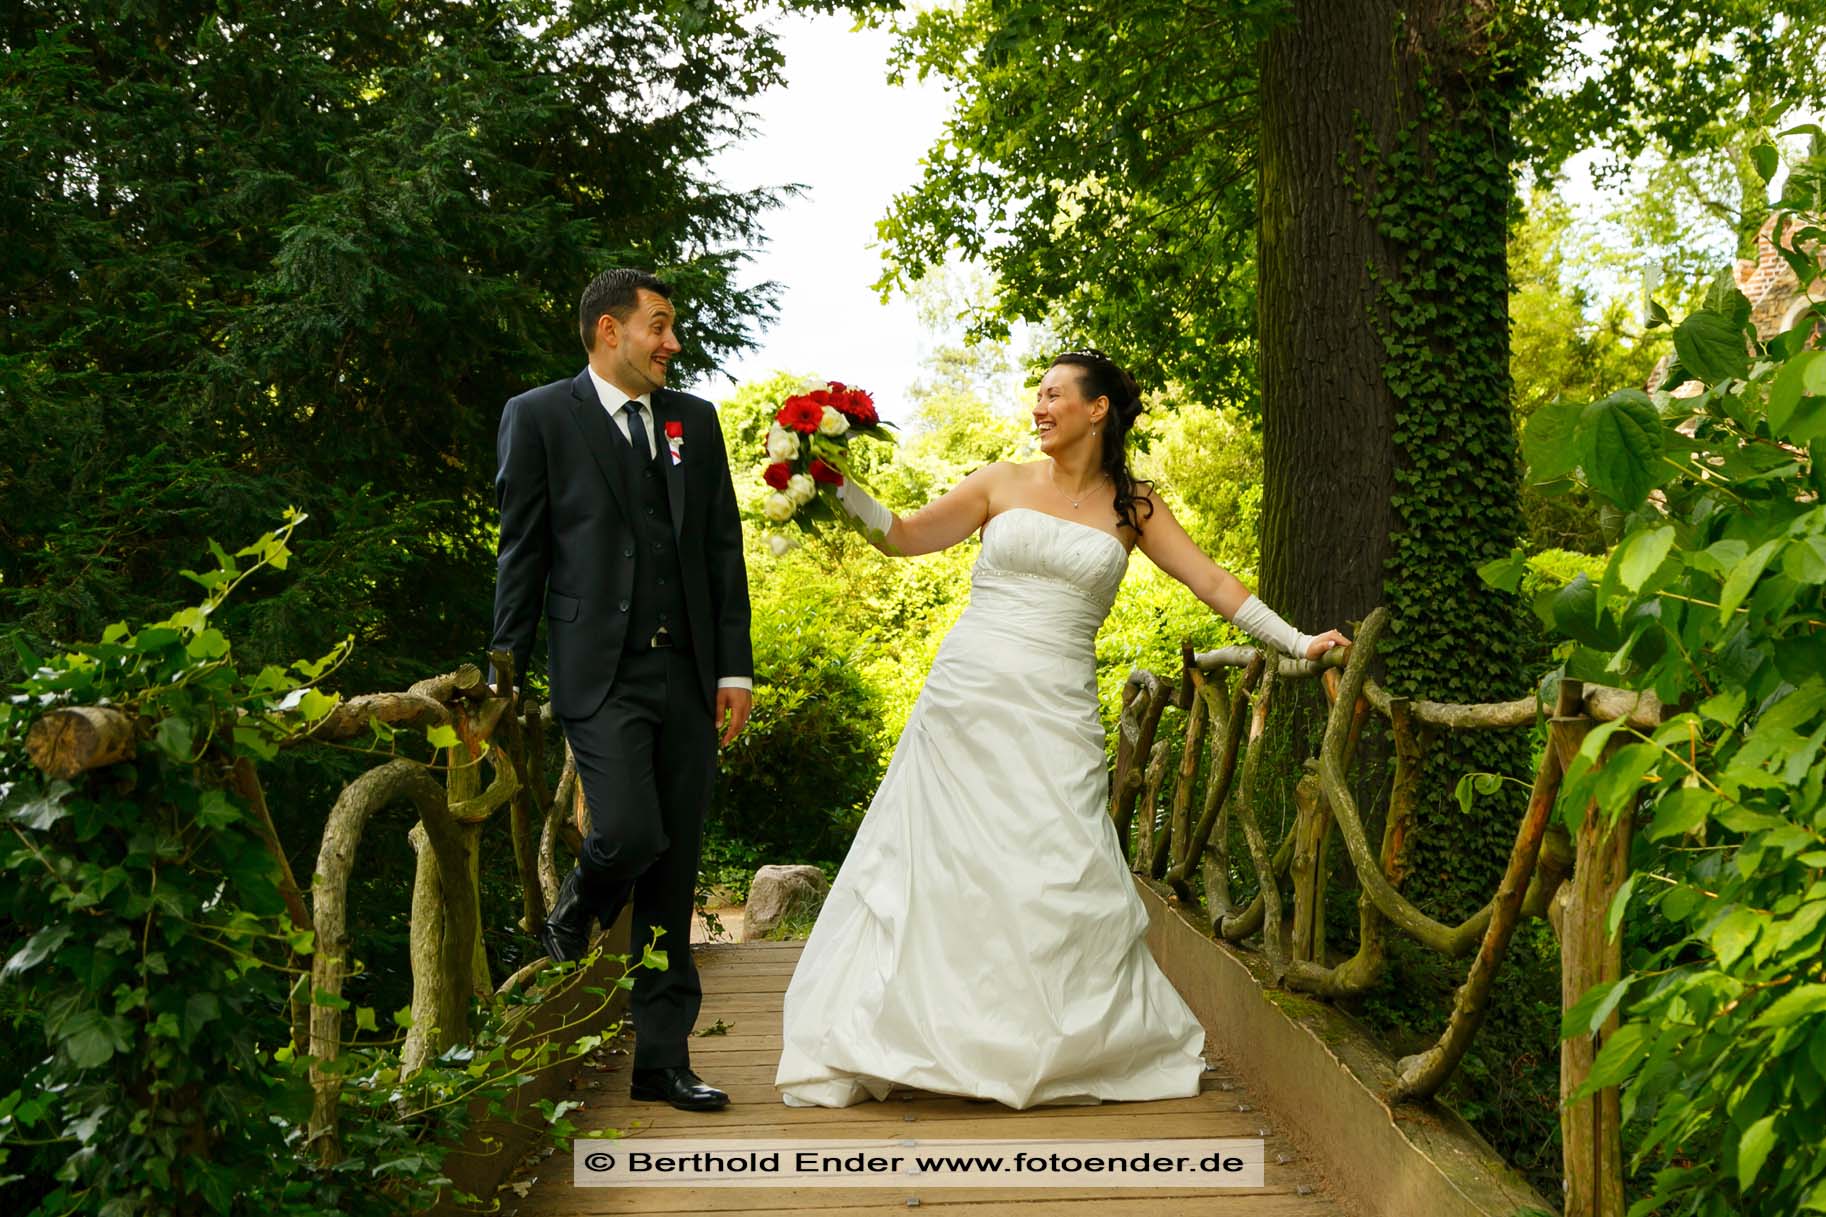 Hochzeitsbilder im Wörlitzer Park, Fotostudio Ender